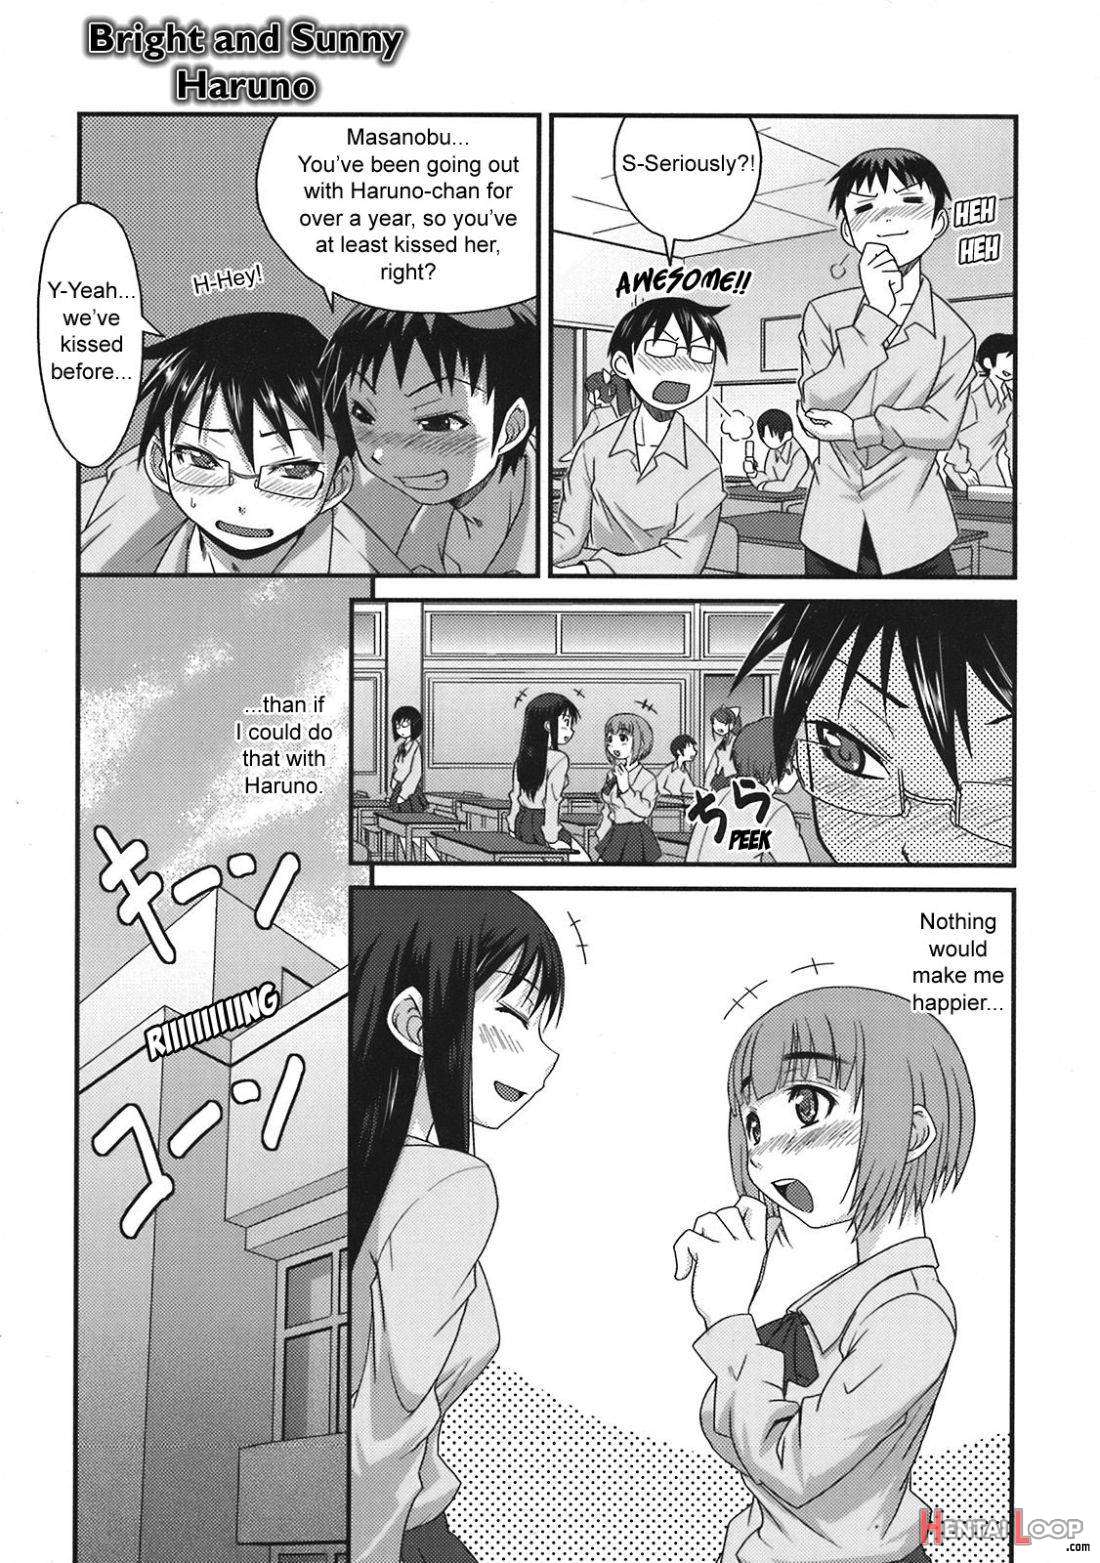 Bright and Sunny Haruno page 3